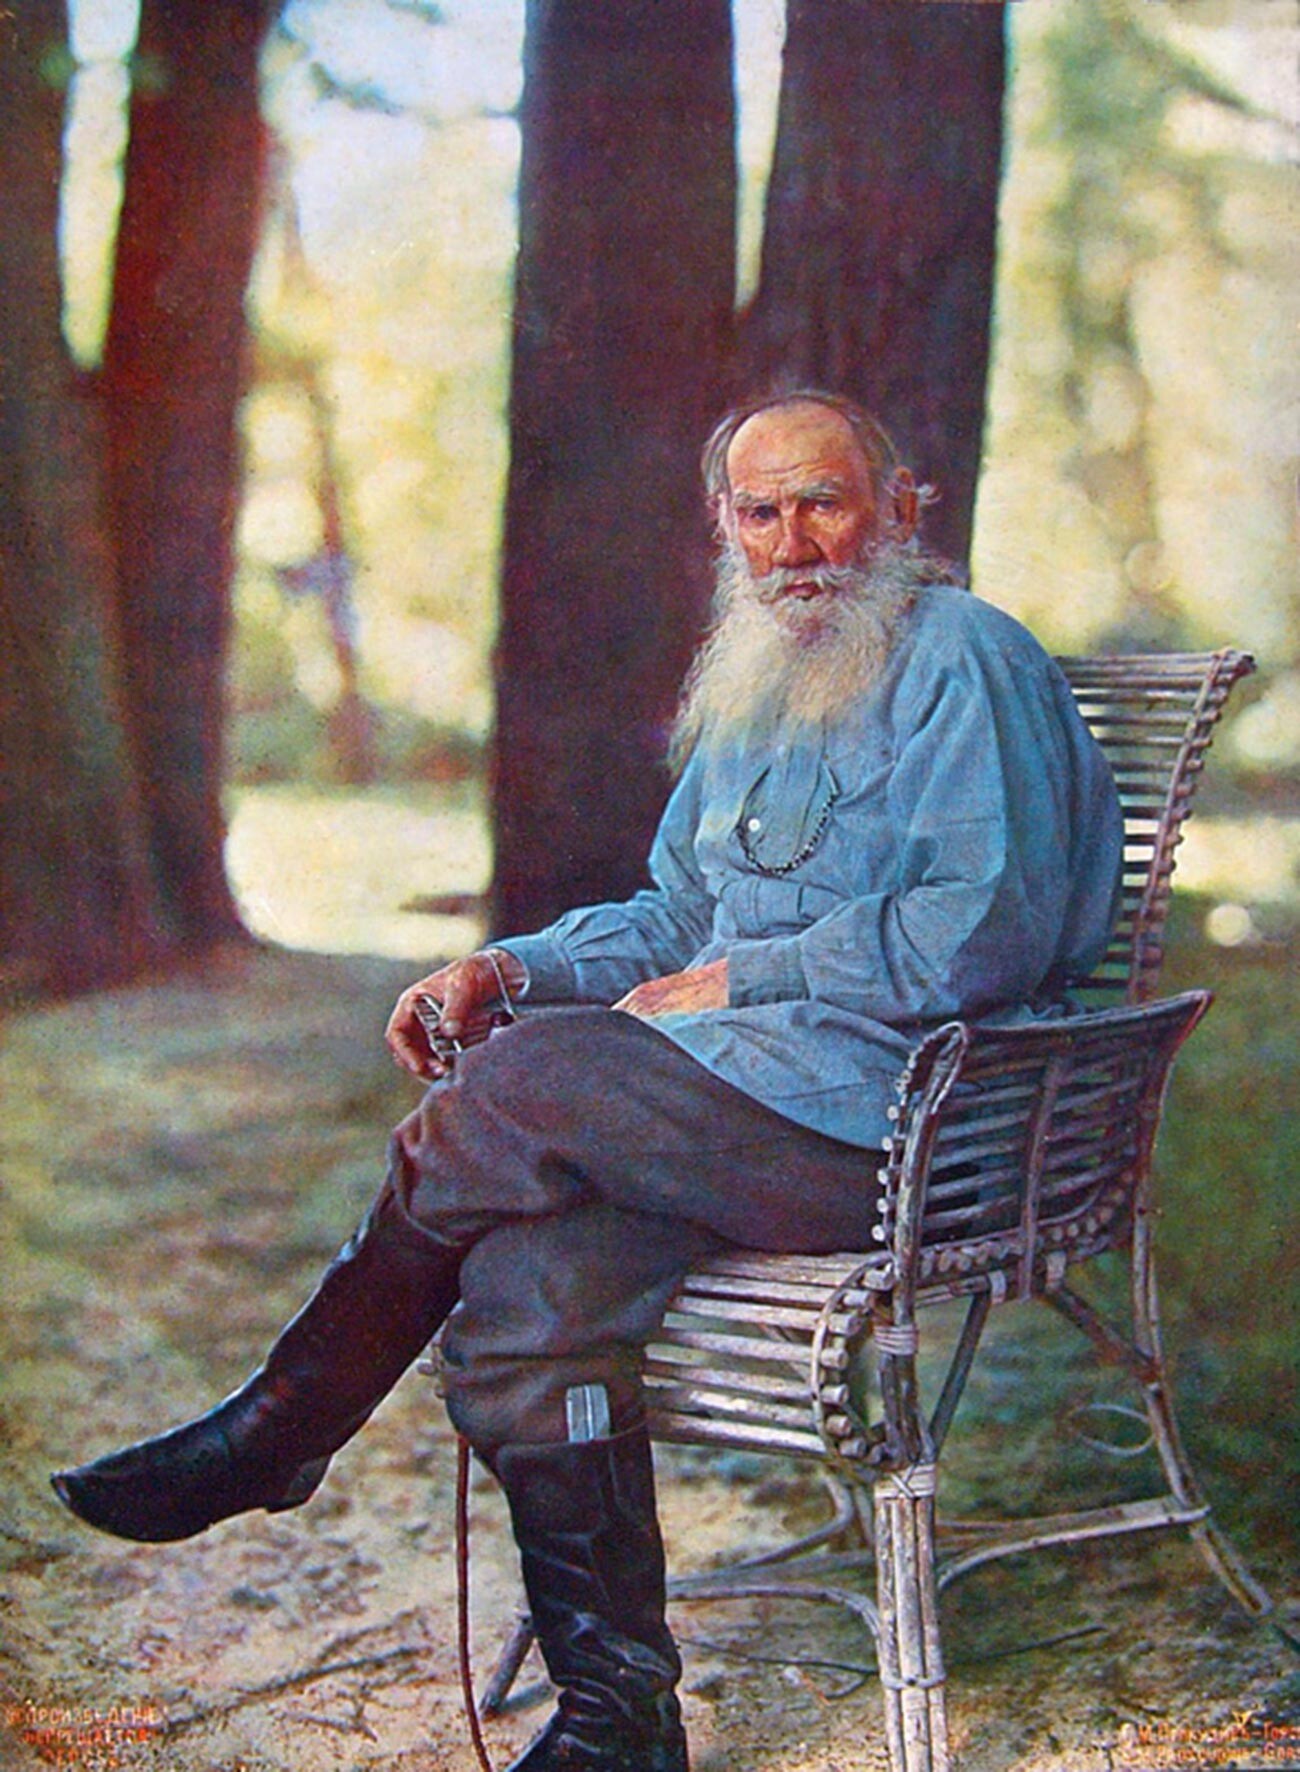 Iasnaïa Poliana. Portrait couleur de Léon Tolstoï pris après son retour d'équitation. Publié pour la première fois dans le numéro d'août des Notes de la Société technique impériale russe